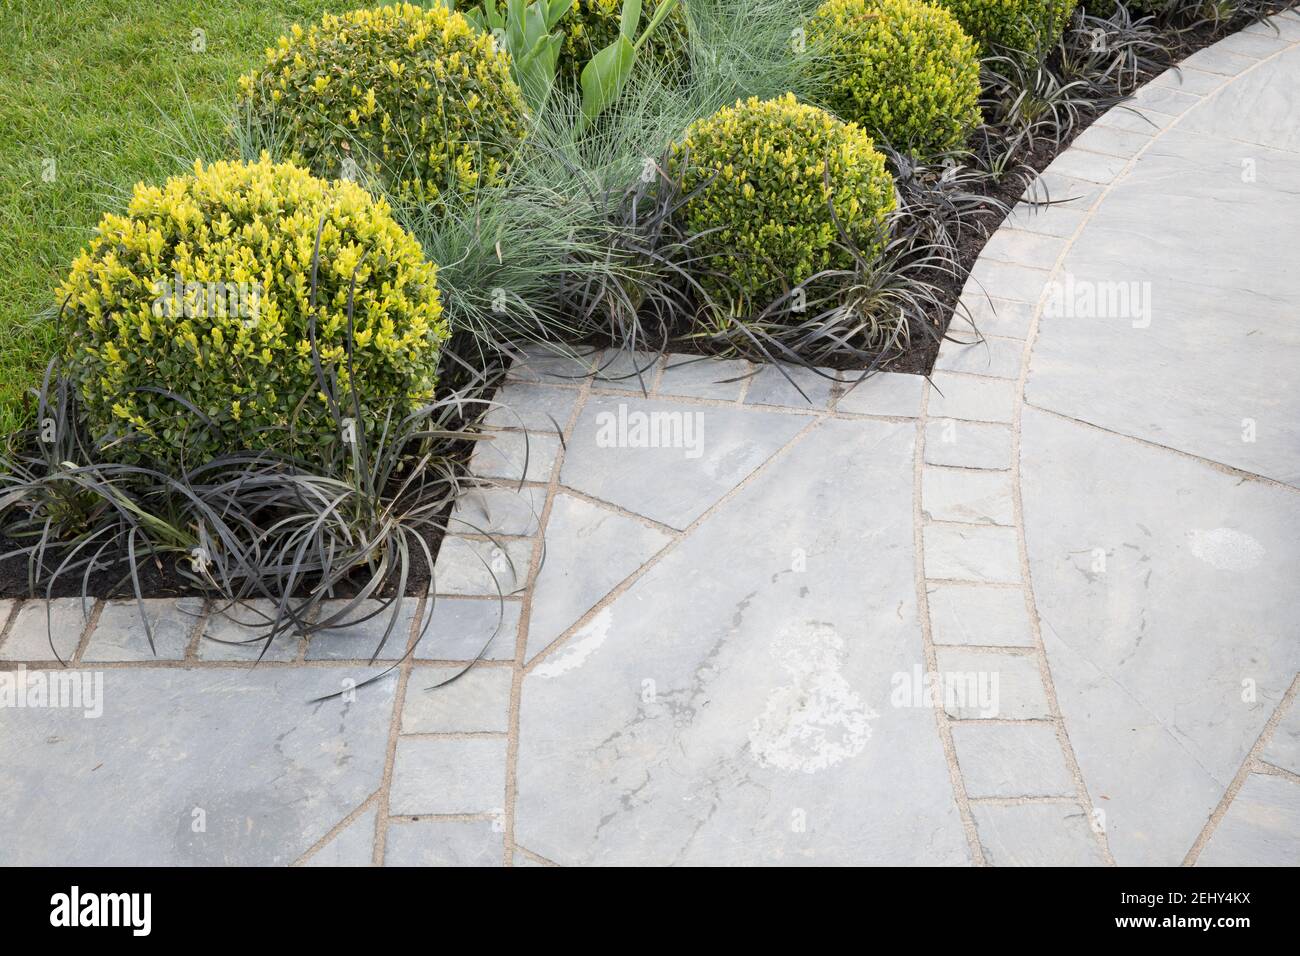 Stadtgarten Rundpflaster und graue Steinplatten auf der Terrasse - Clipped Buxus sempervirens Box topiary Kugeln und Ziergräser England GB UK Frühling Stockfoto